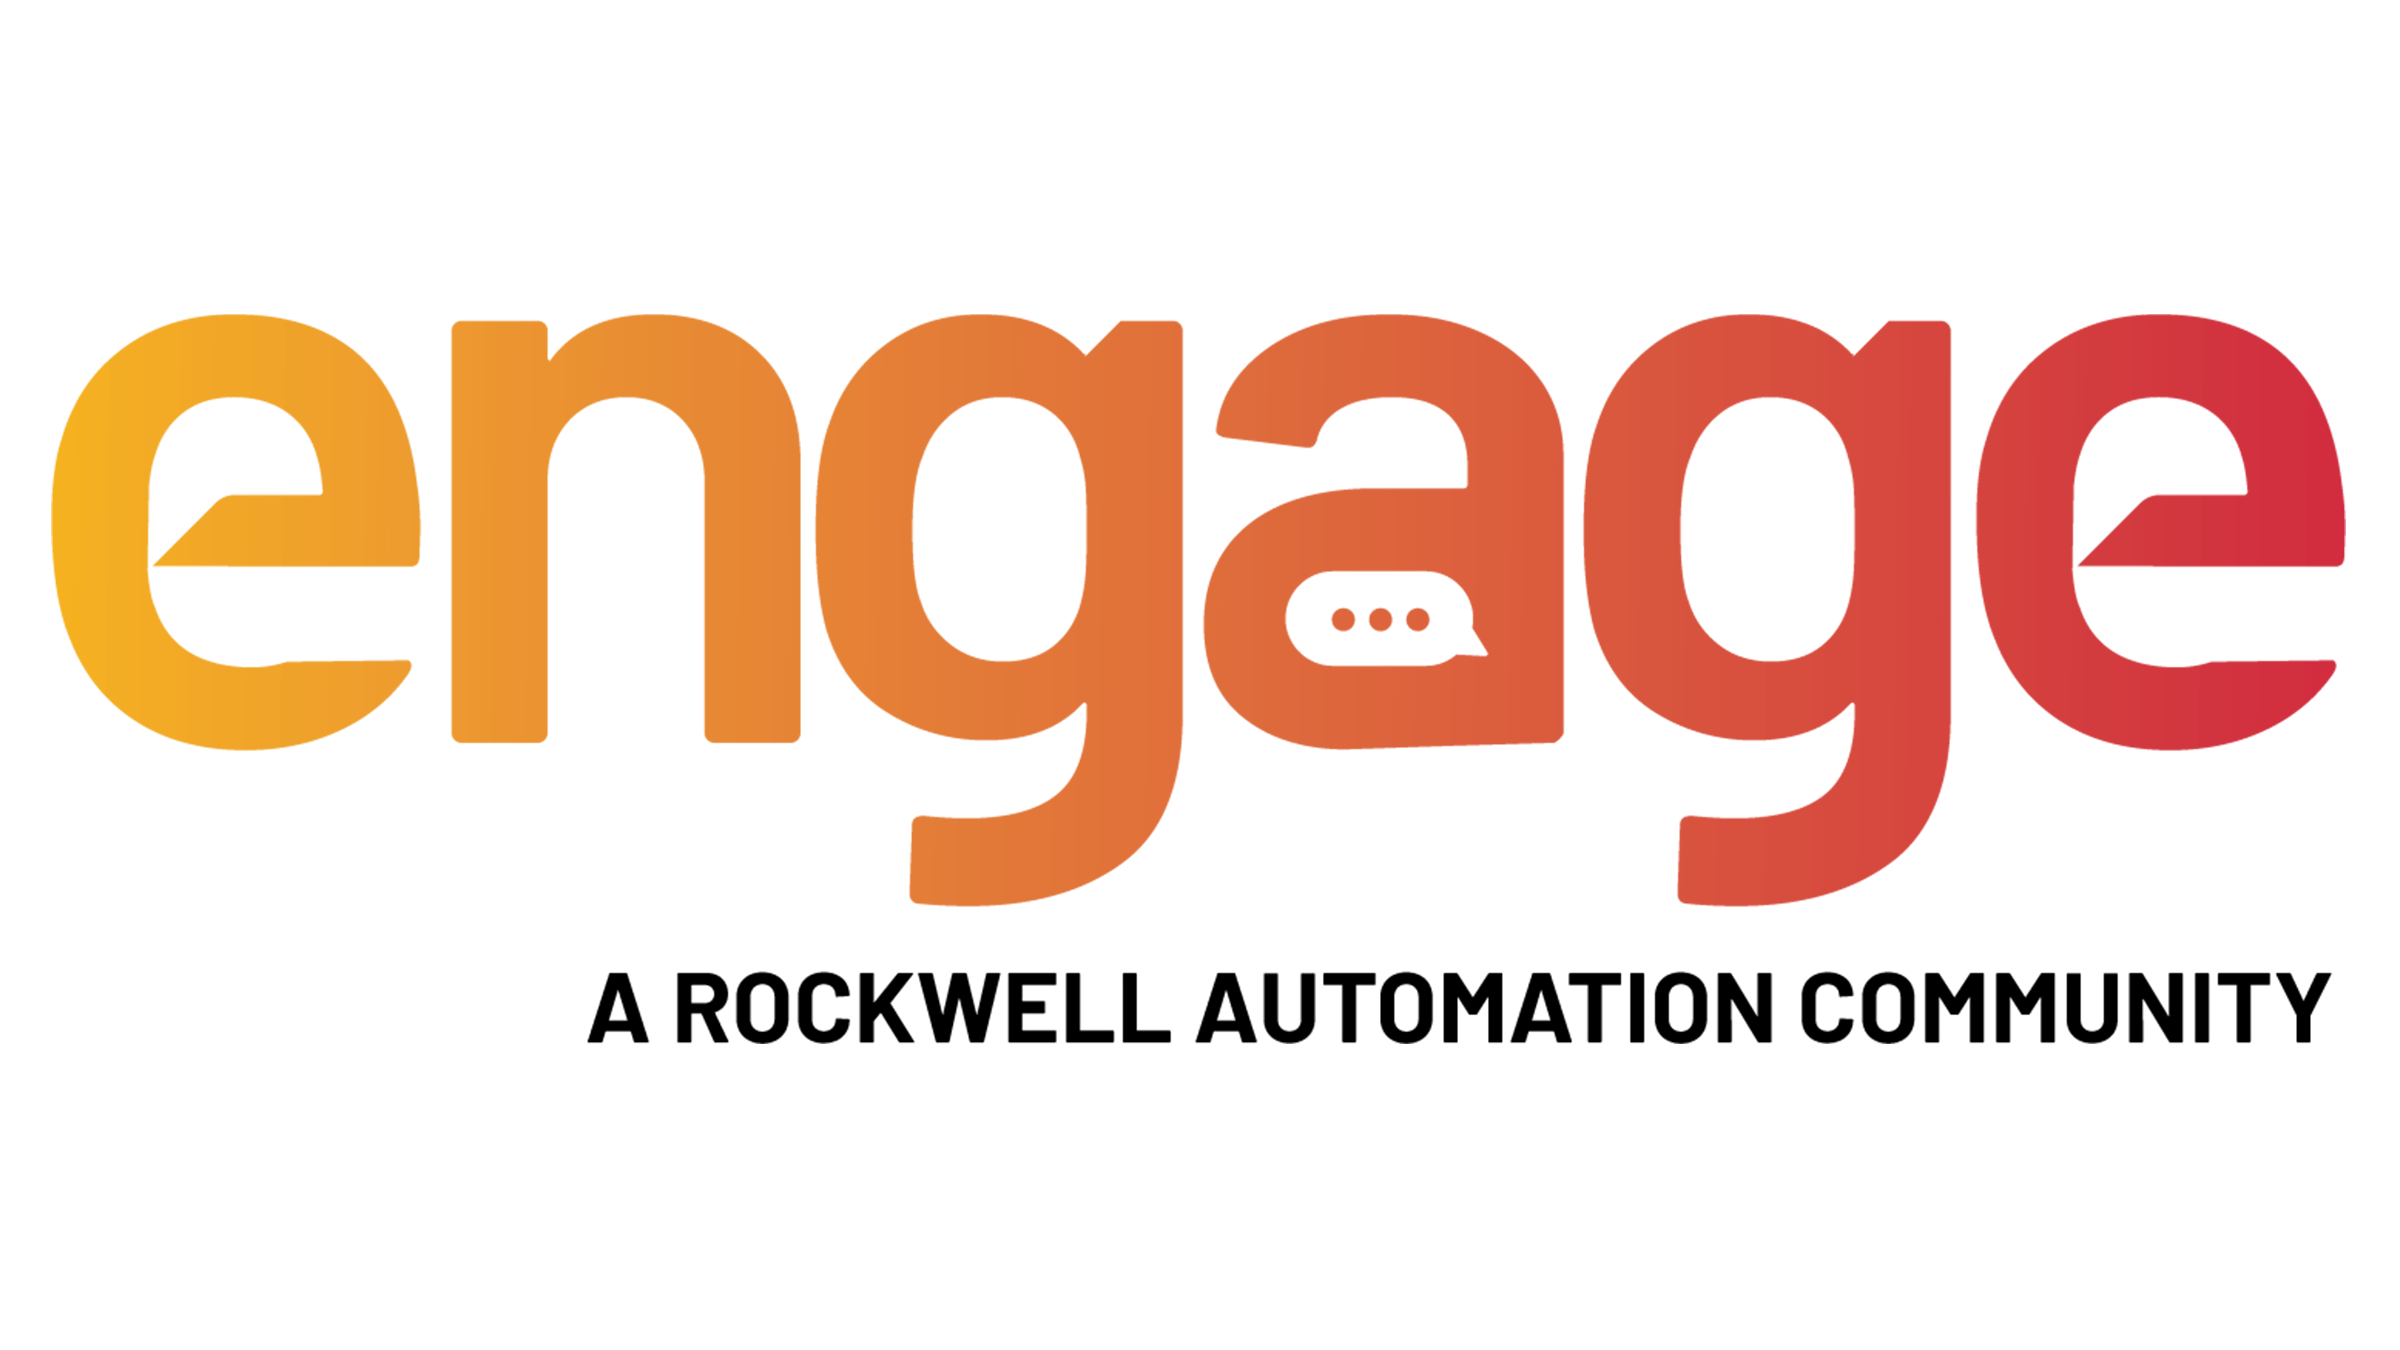 Logotipo da comunidade Engage da Rockwell Automation em amarelo, laranja e vermelho